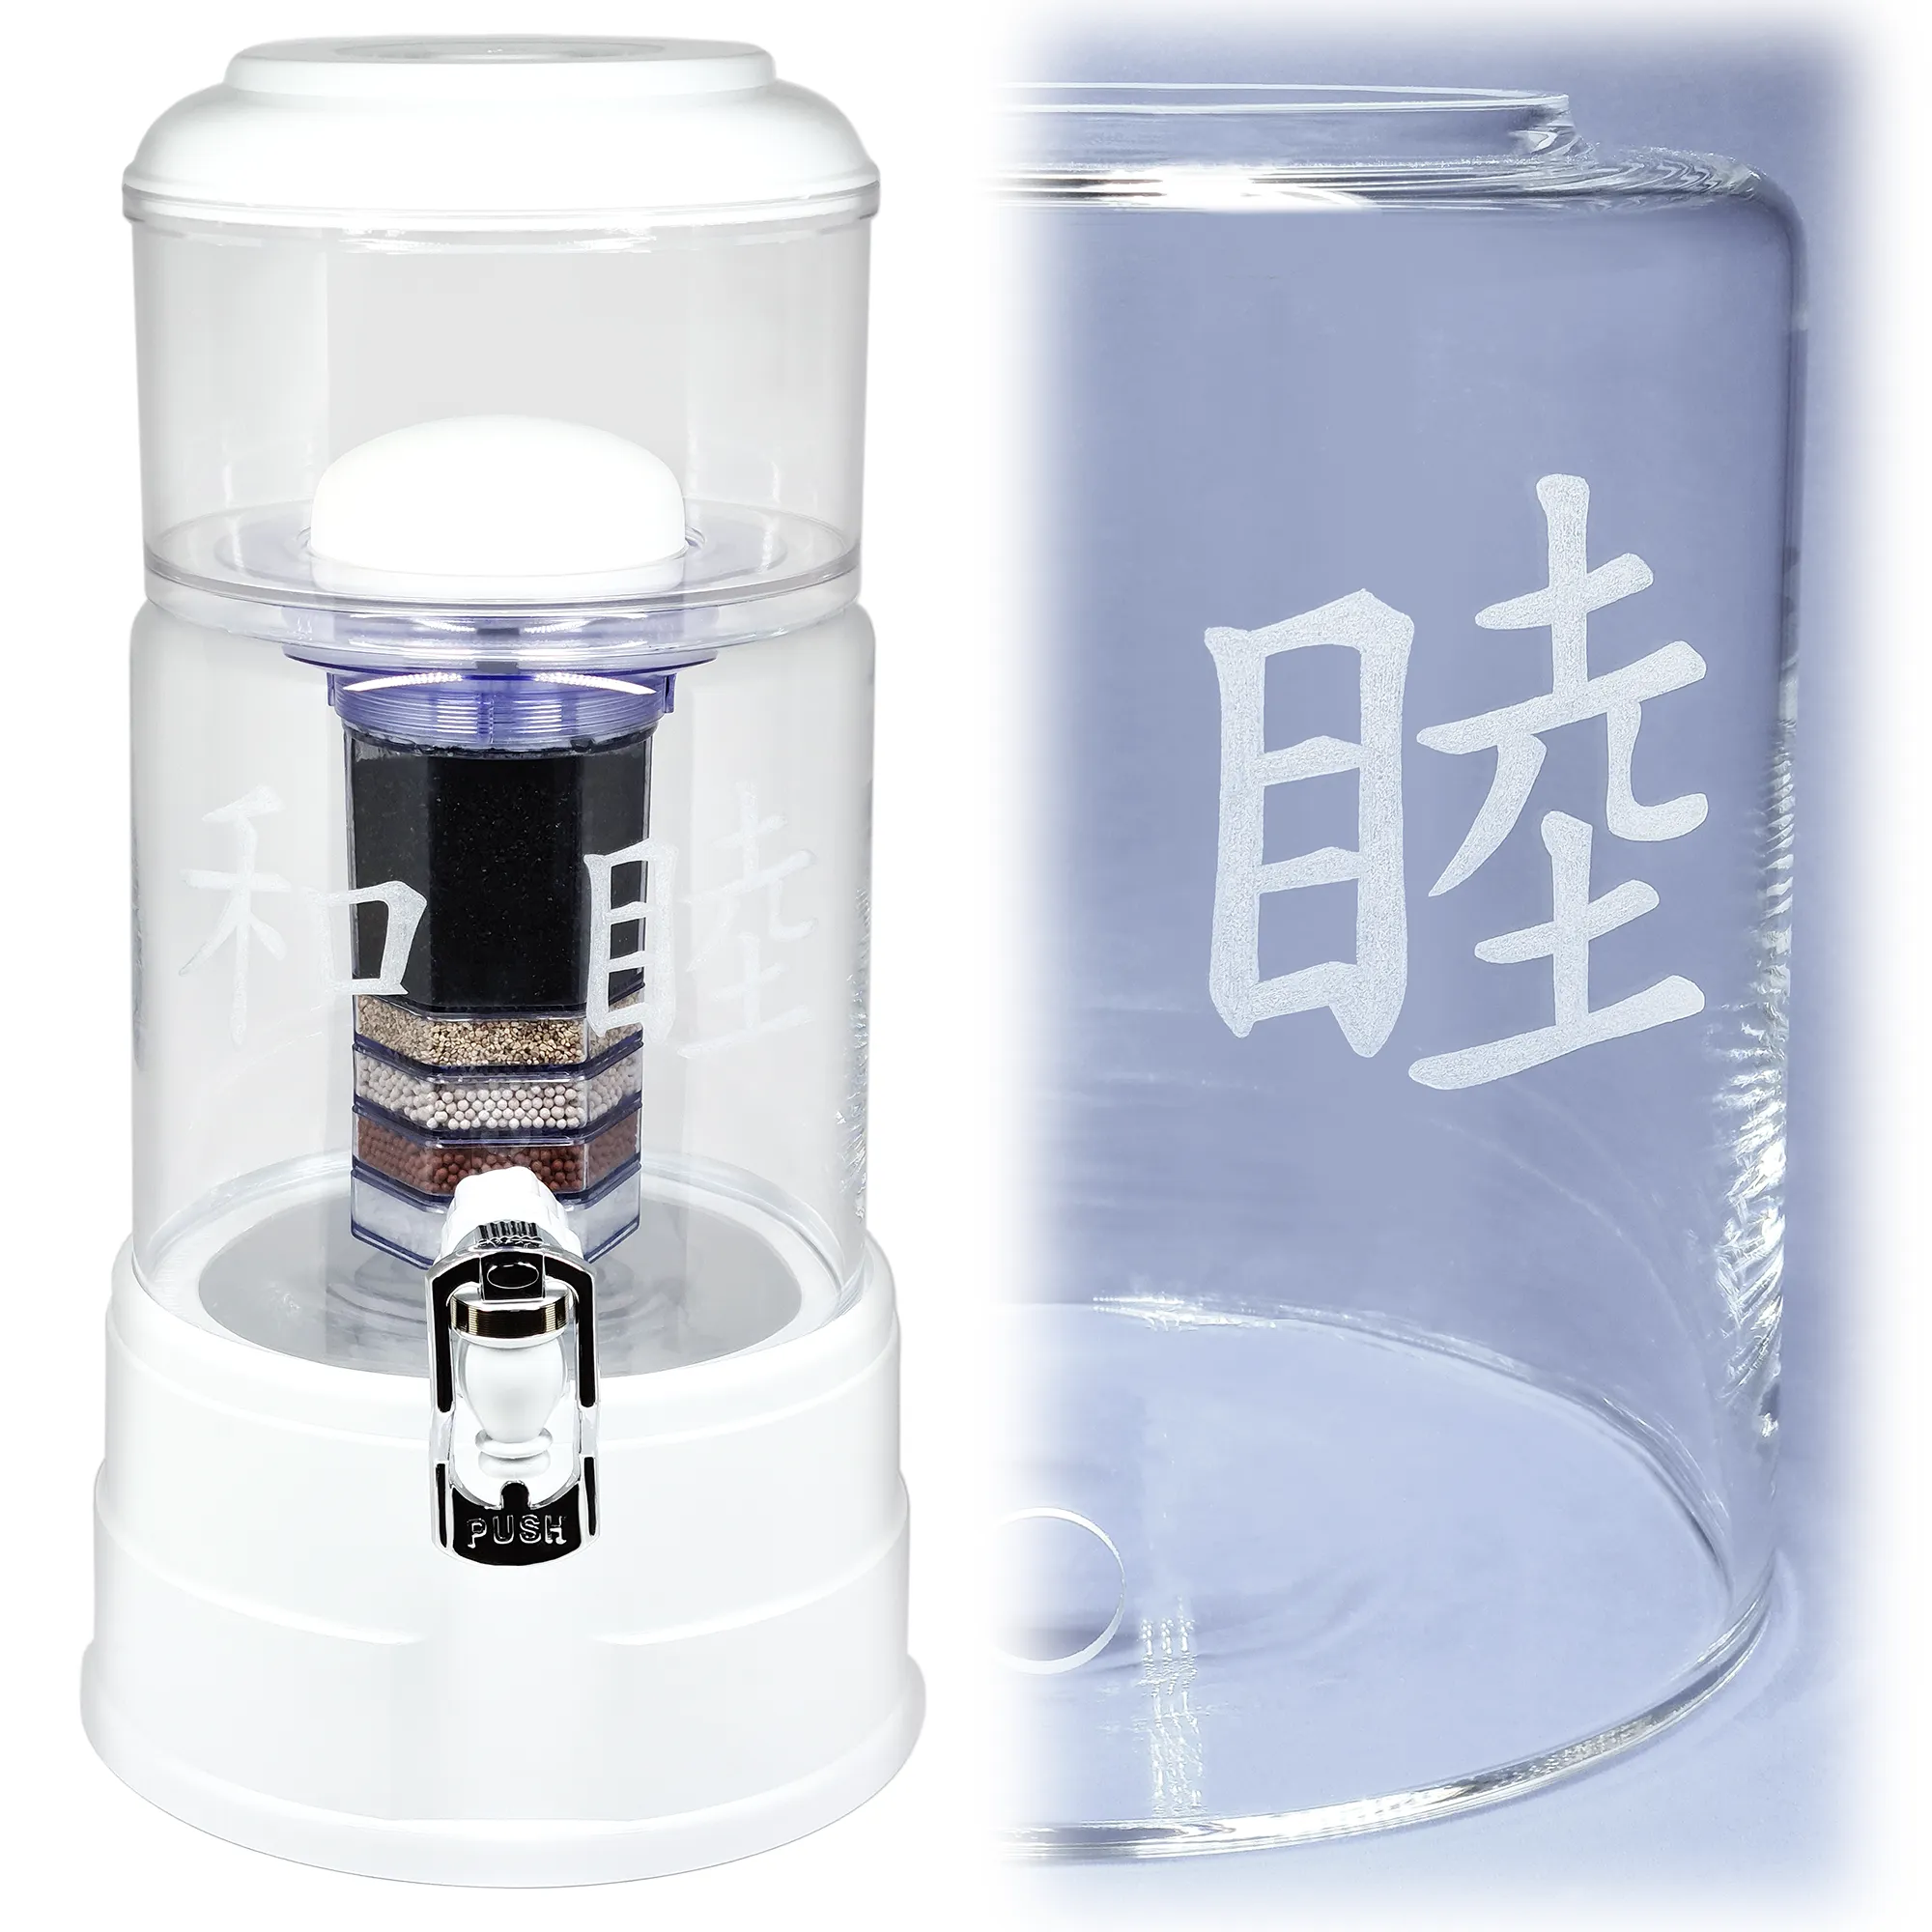 Acala Wasserfilter in klarem Glas mit dem gravierten chinesischen Zeichen Harmonie.Rechts von dem Wasserfilter ist eine Nahaufnahme der Gravur. 